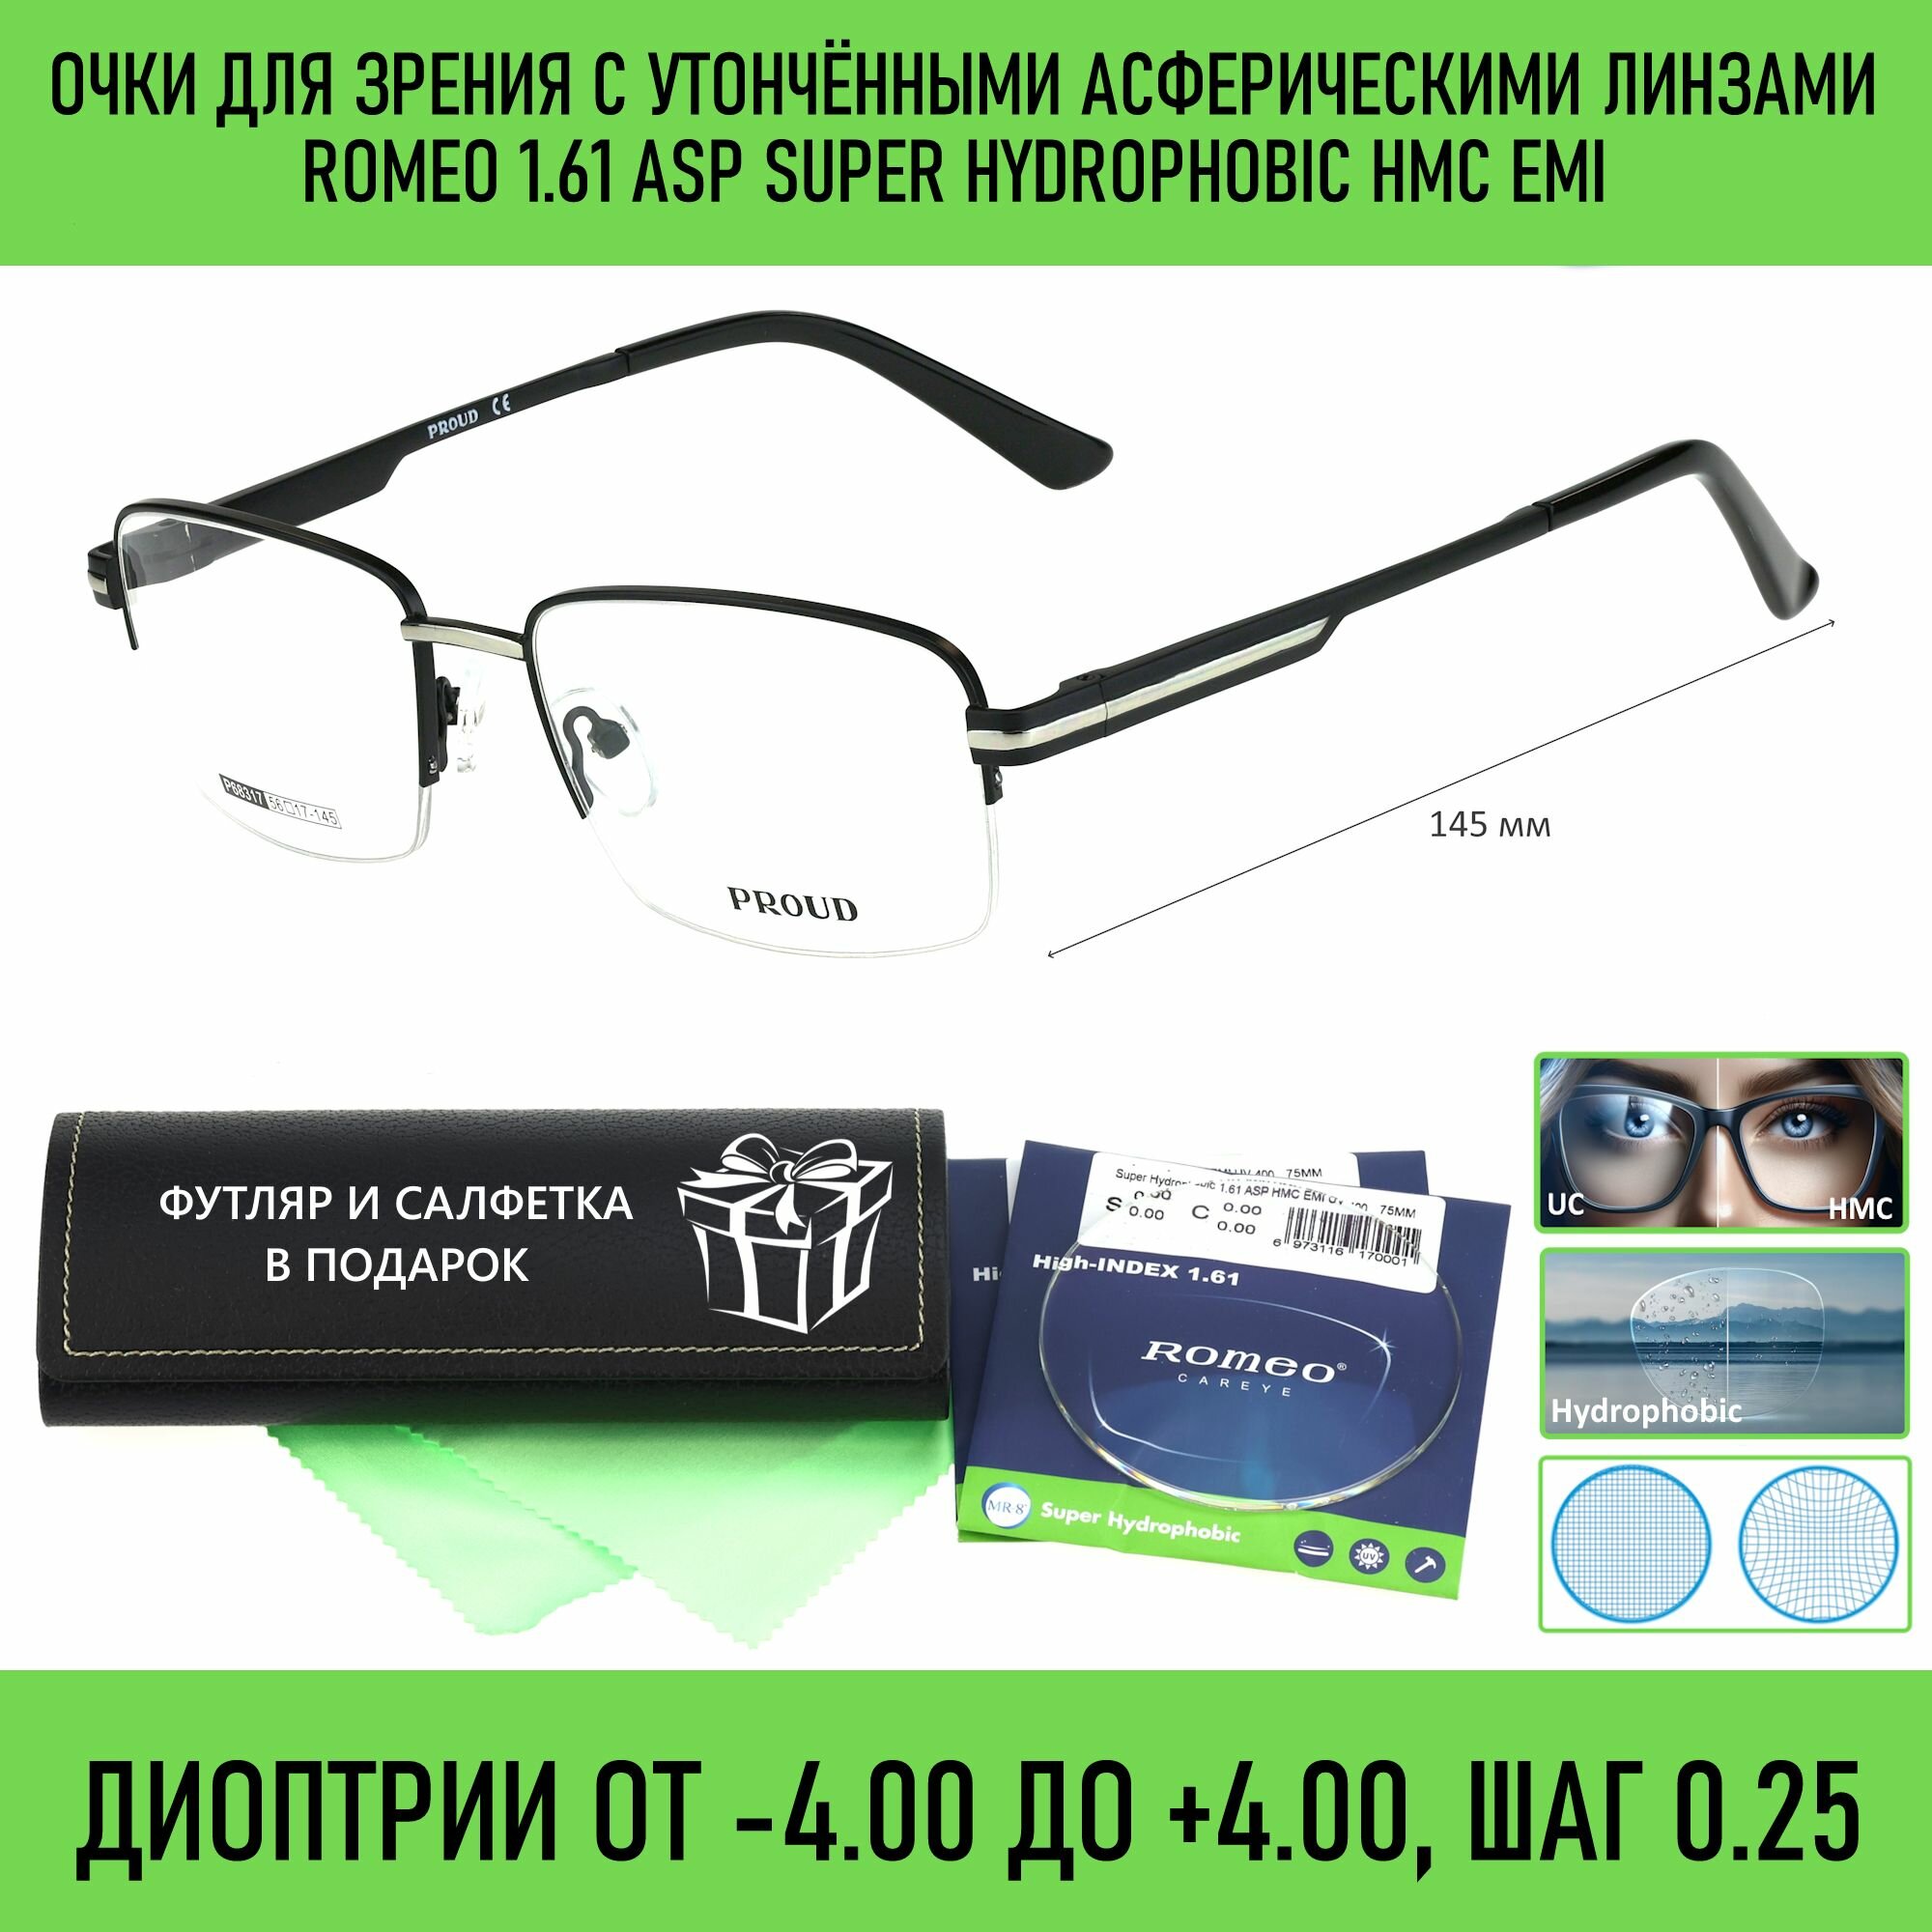 Очки для чтения с футляром на магните PROUD мод. 68317 Цвет 1 с асферическими линзами ROMEO 1.61 ASP Super Hydrophobic HMC/EMI +1.50 РЦ 66-68